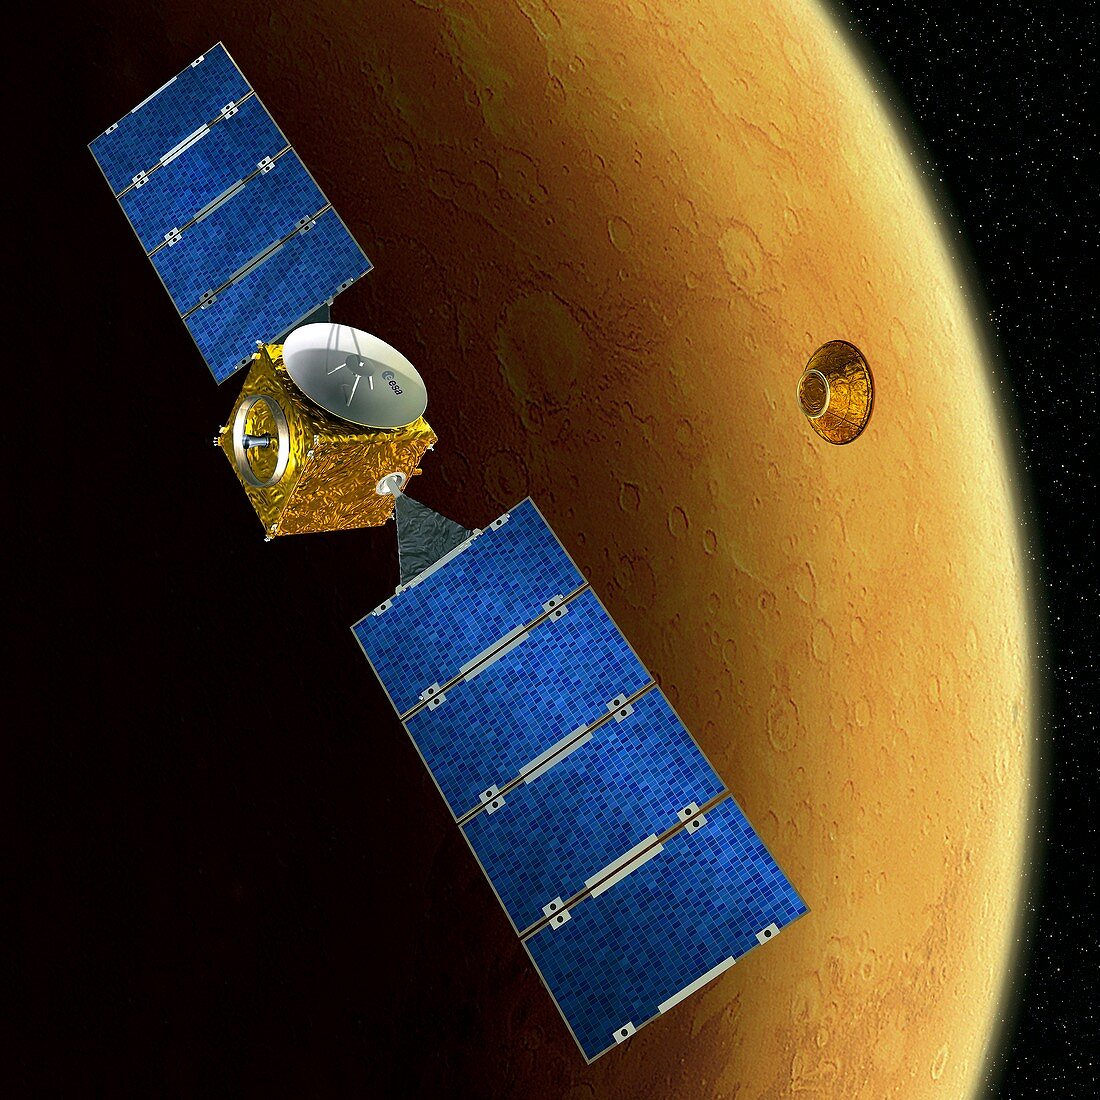 Mars Express and Beagle 2,artwork